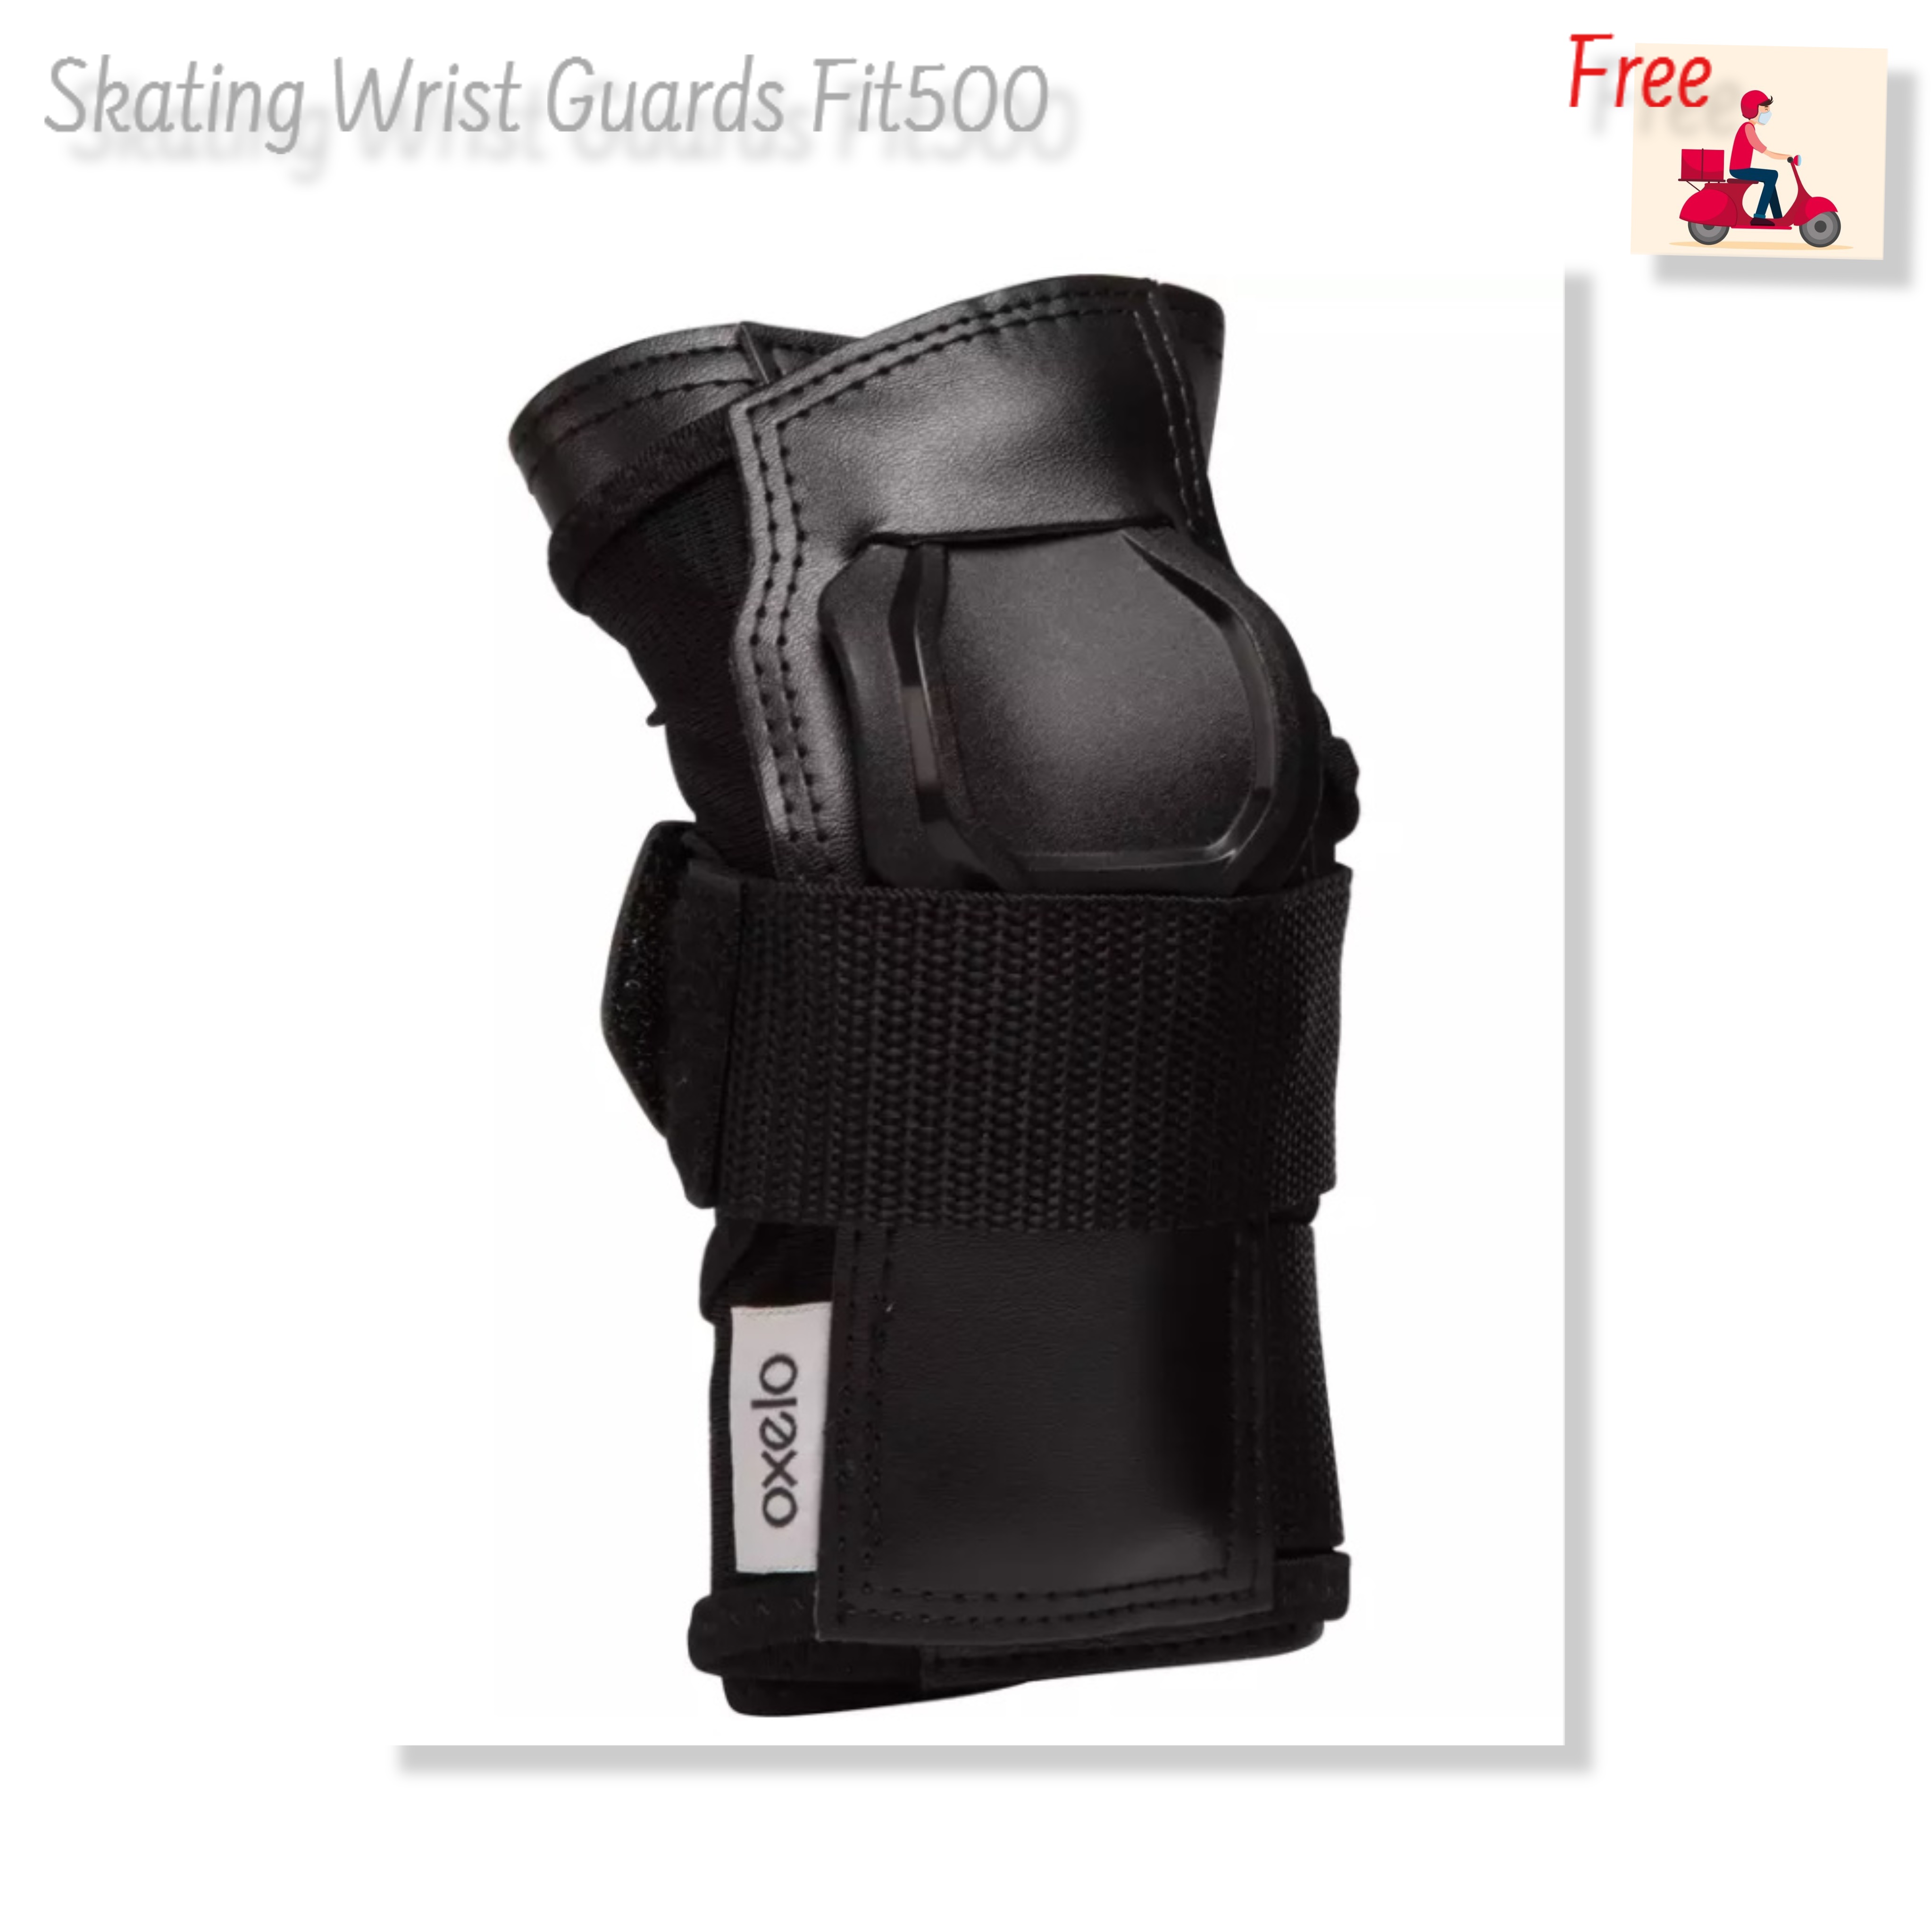 สนับป้องกัน ข้อมือ สำหรับผู้ใหญ่รุ่น Fit500 Adult Skating Wrist Guards Fit500